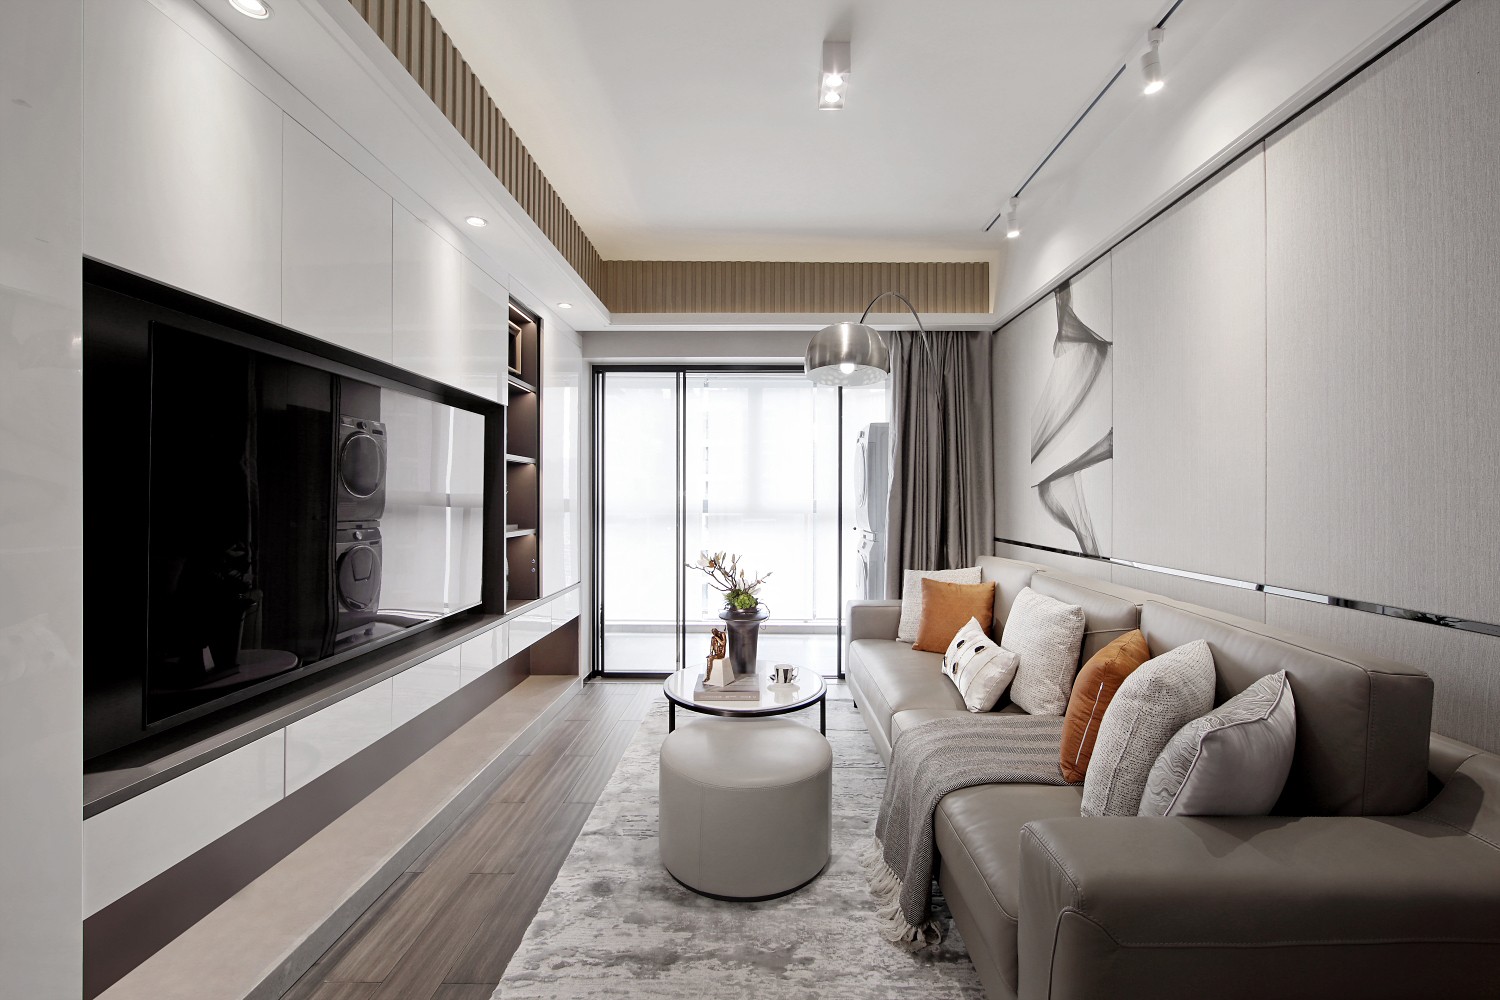 皮质沙发与木质的地板搭配设计，使客厅呈现出沉稳舒适的空间氛围。 